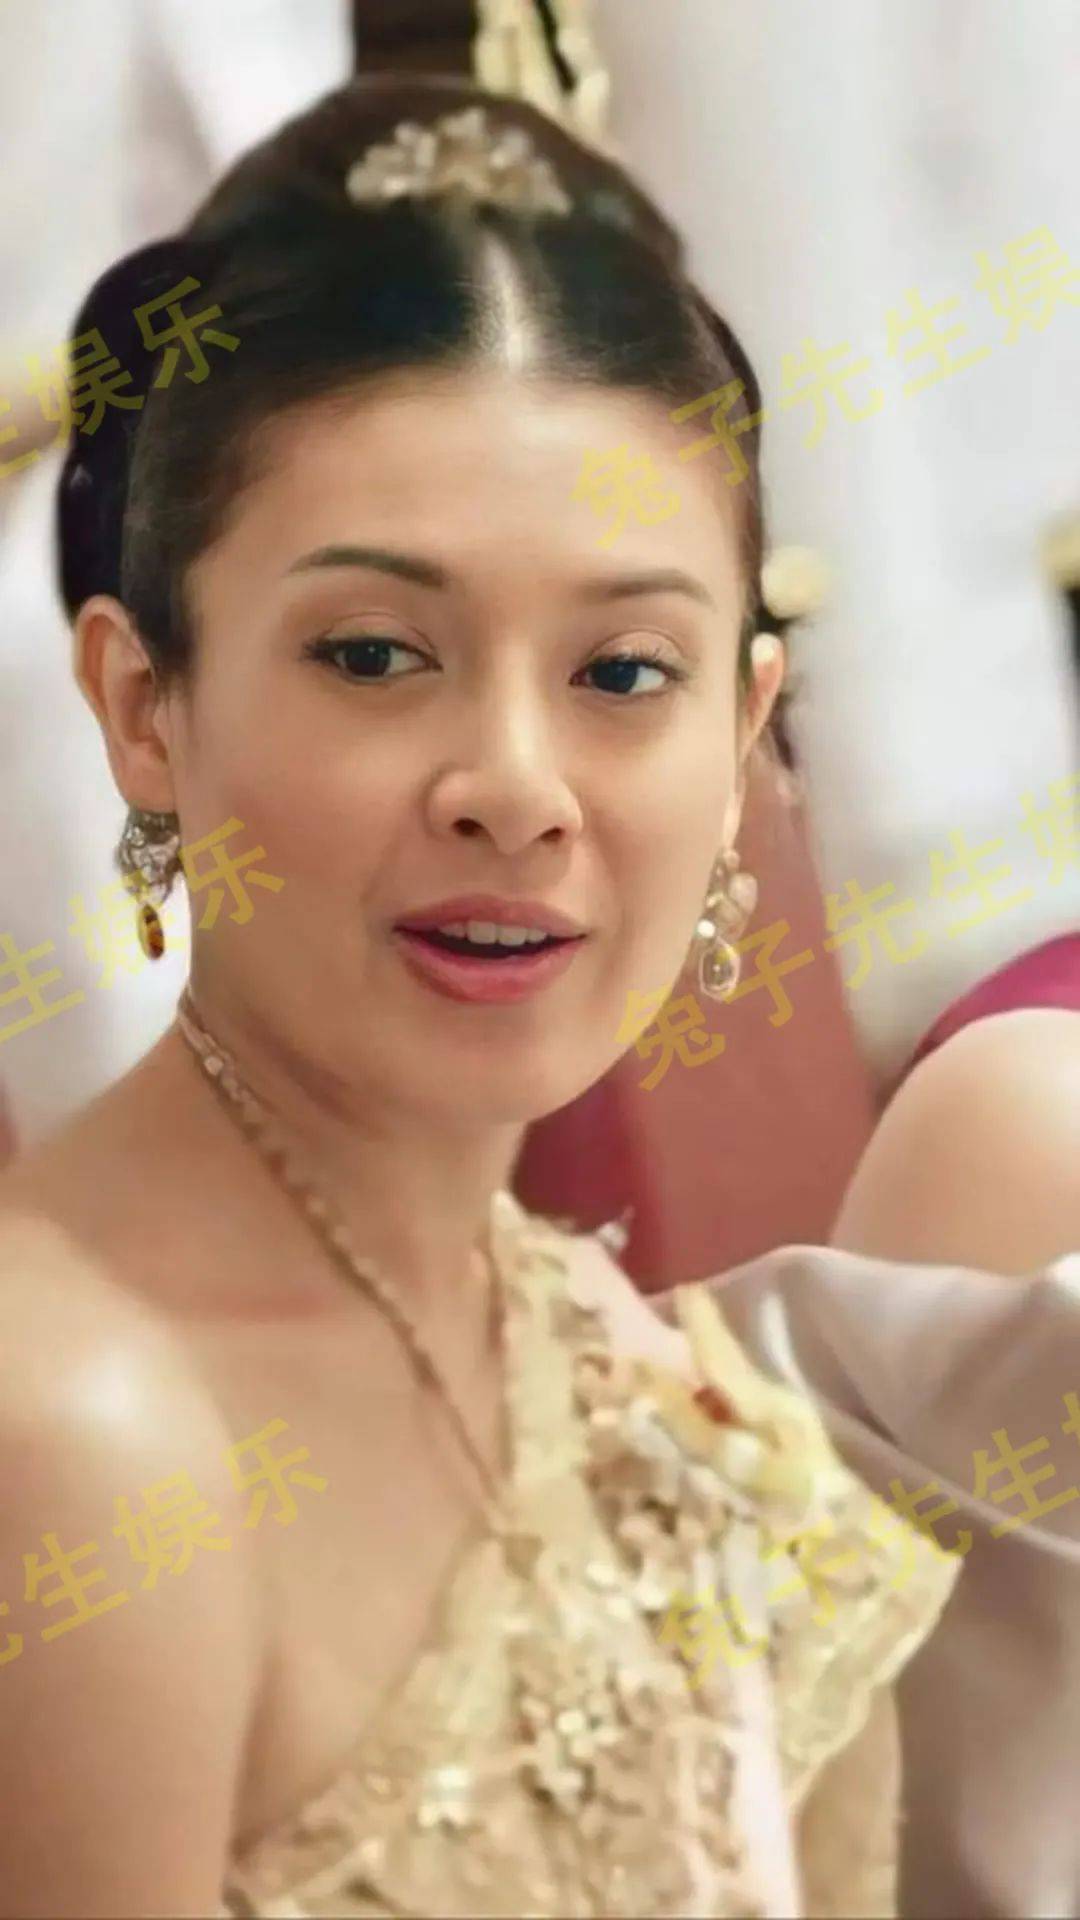 西拉米王妃现身抖音,引泰国民众怀念,泰王该释放前妻自由了